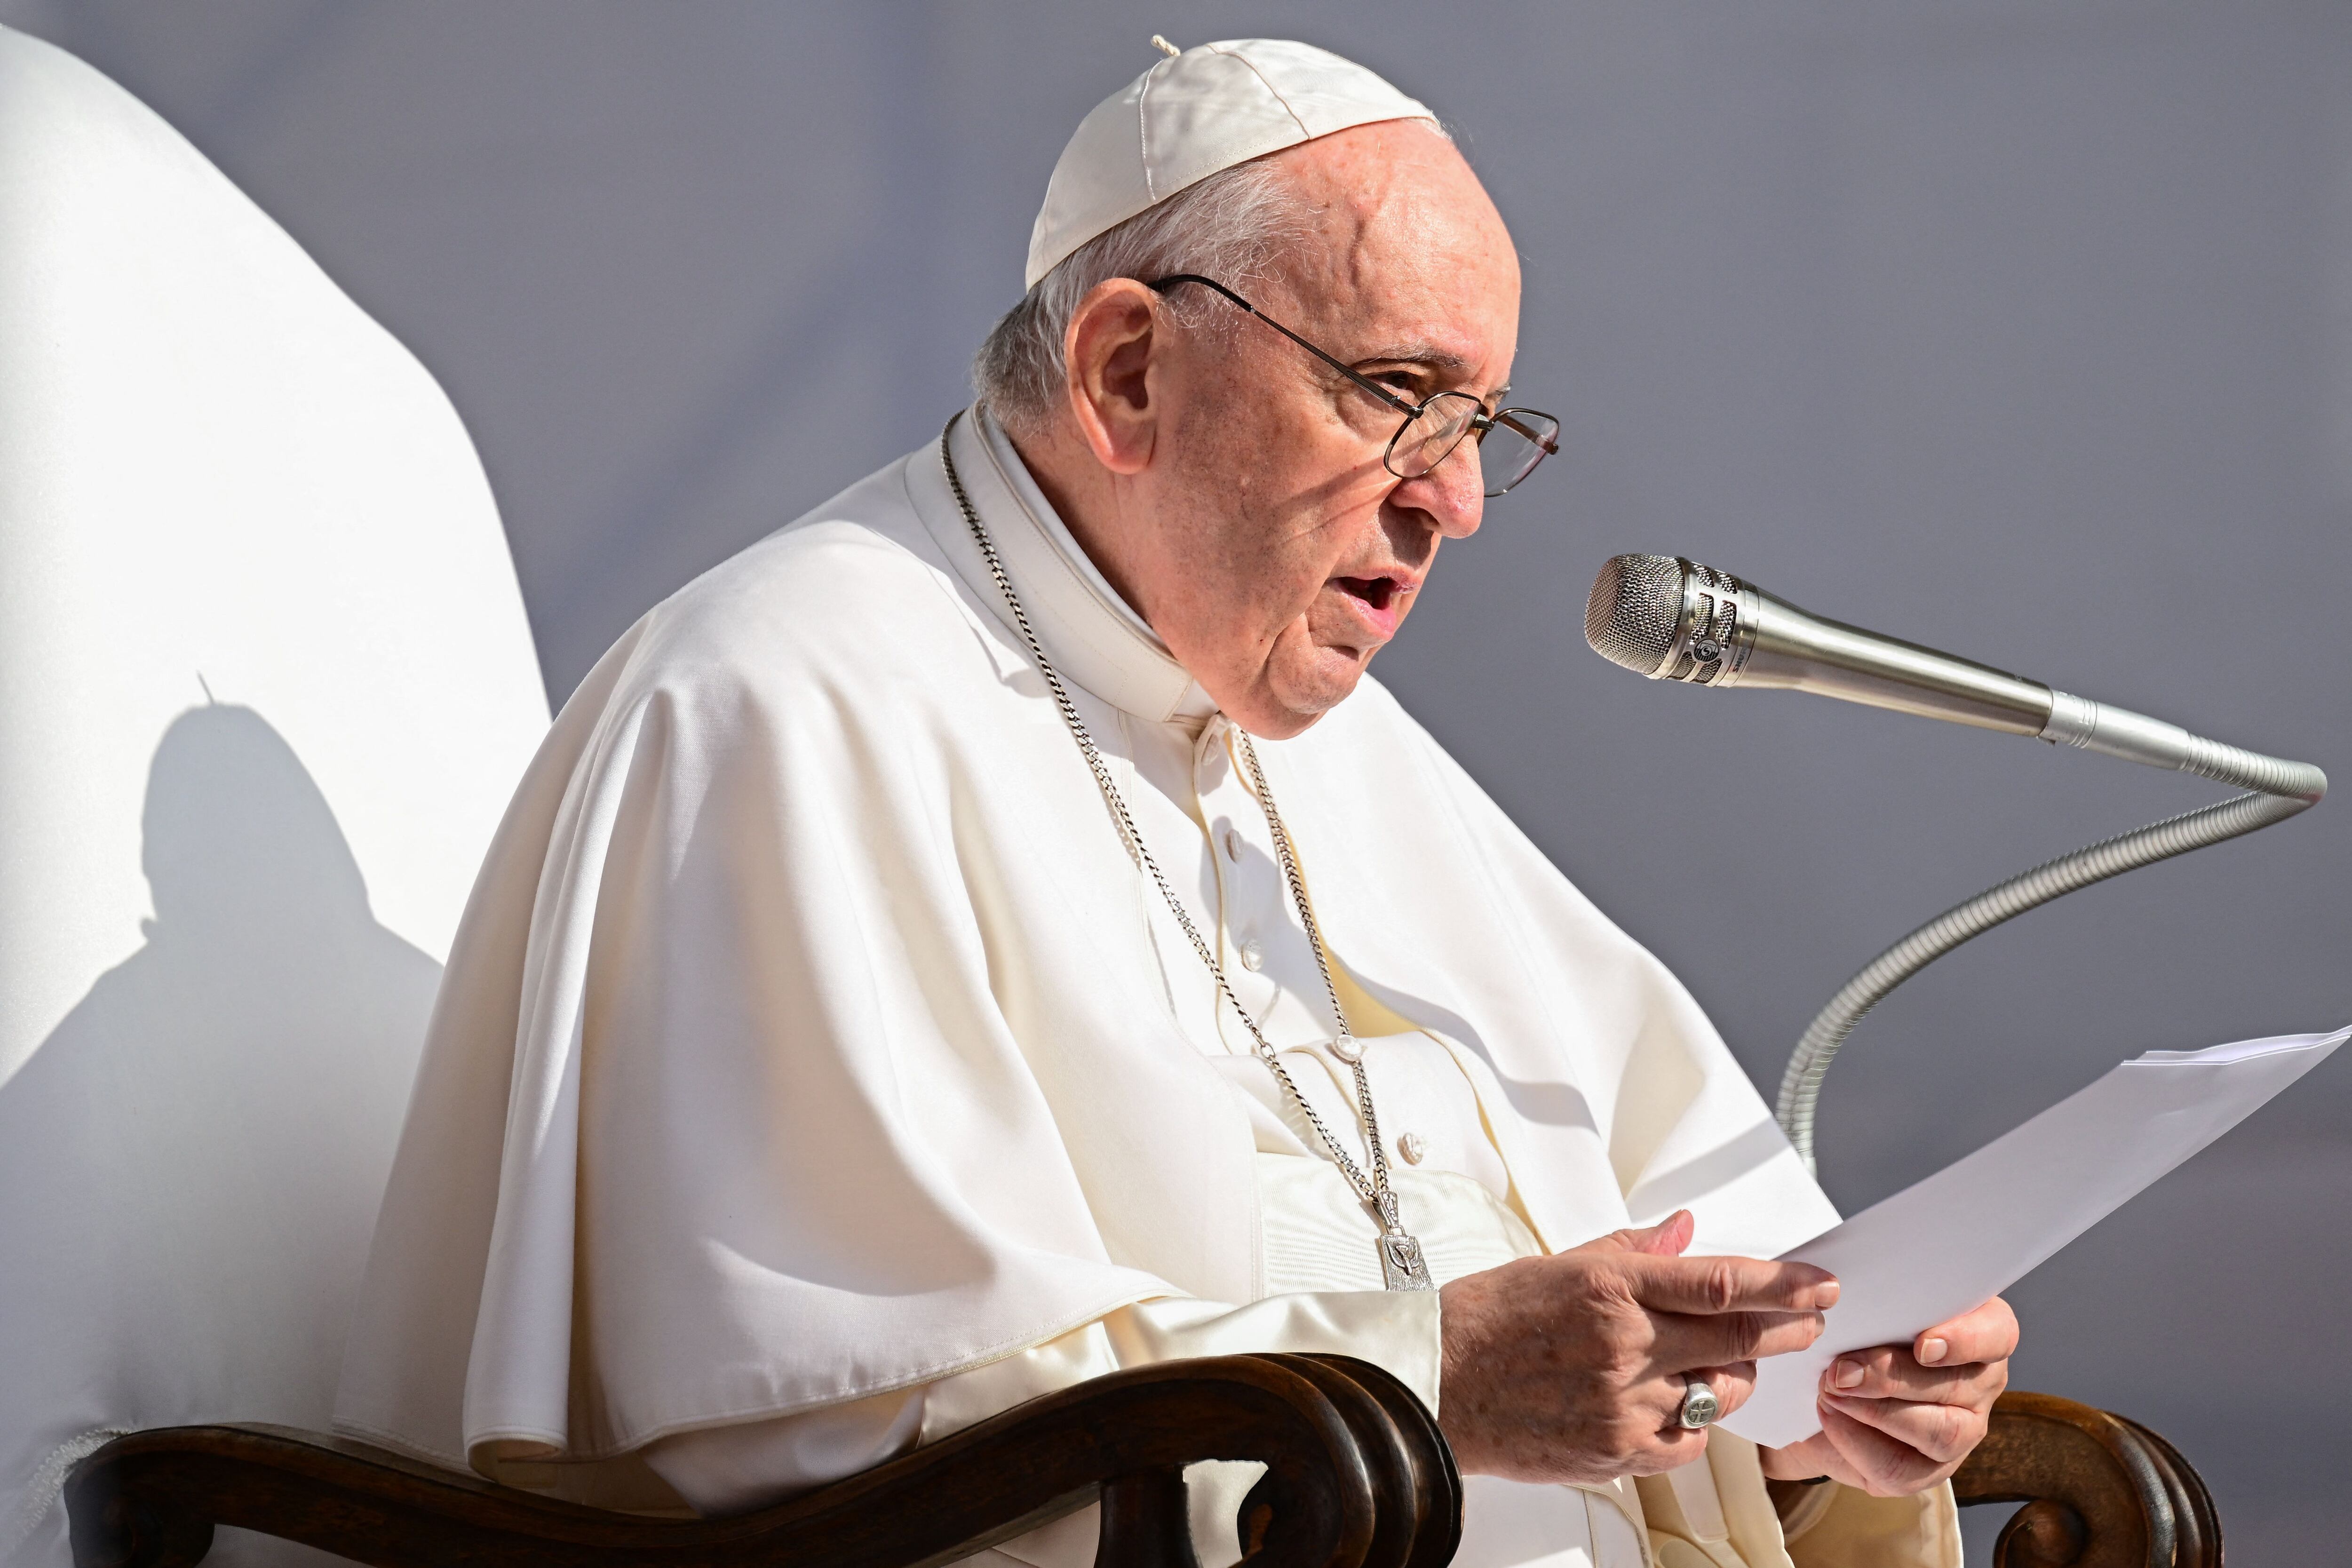 El Papa Francisco reconoce que los abusos sexuales en la iglesia, así como “su mal manejo”, representan un “claro peligro” para la institución religiosa. FOTO: 